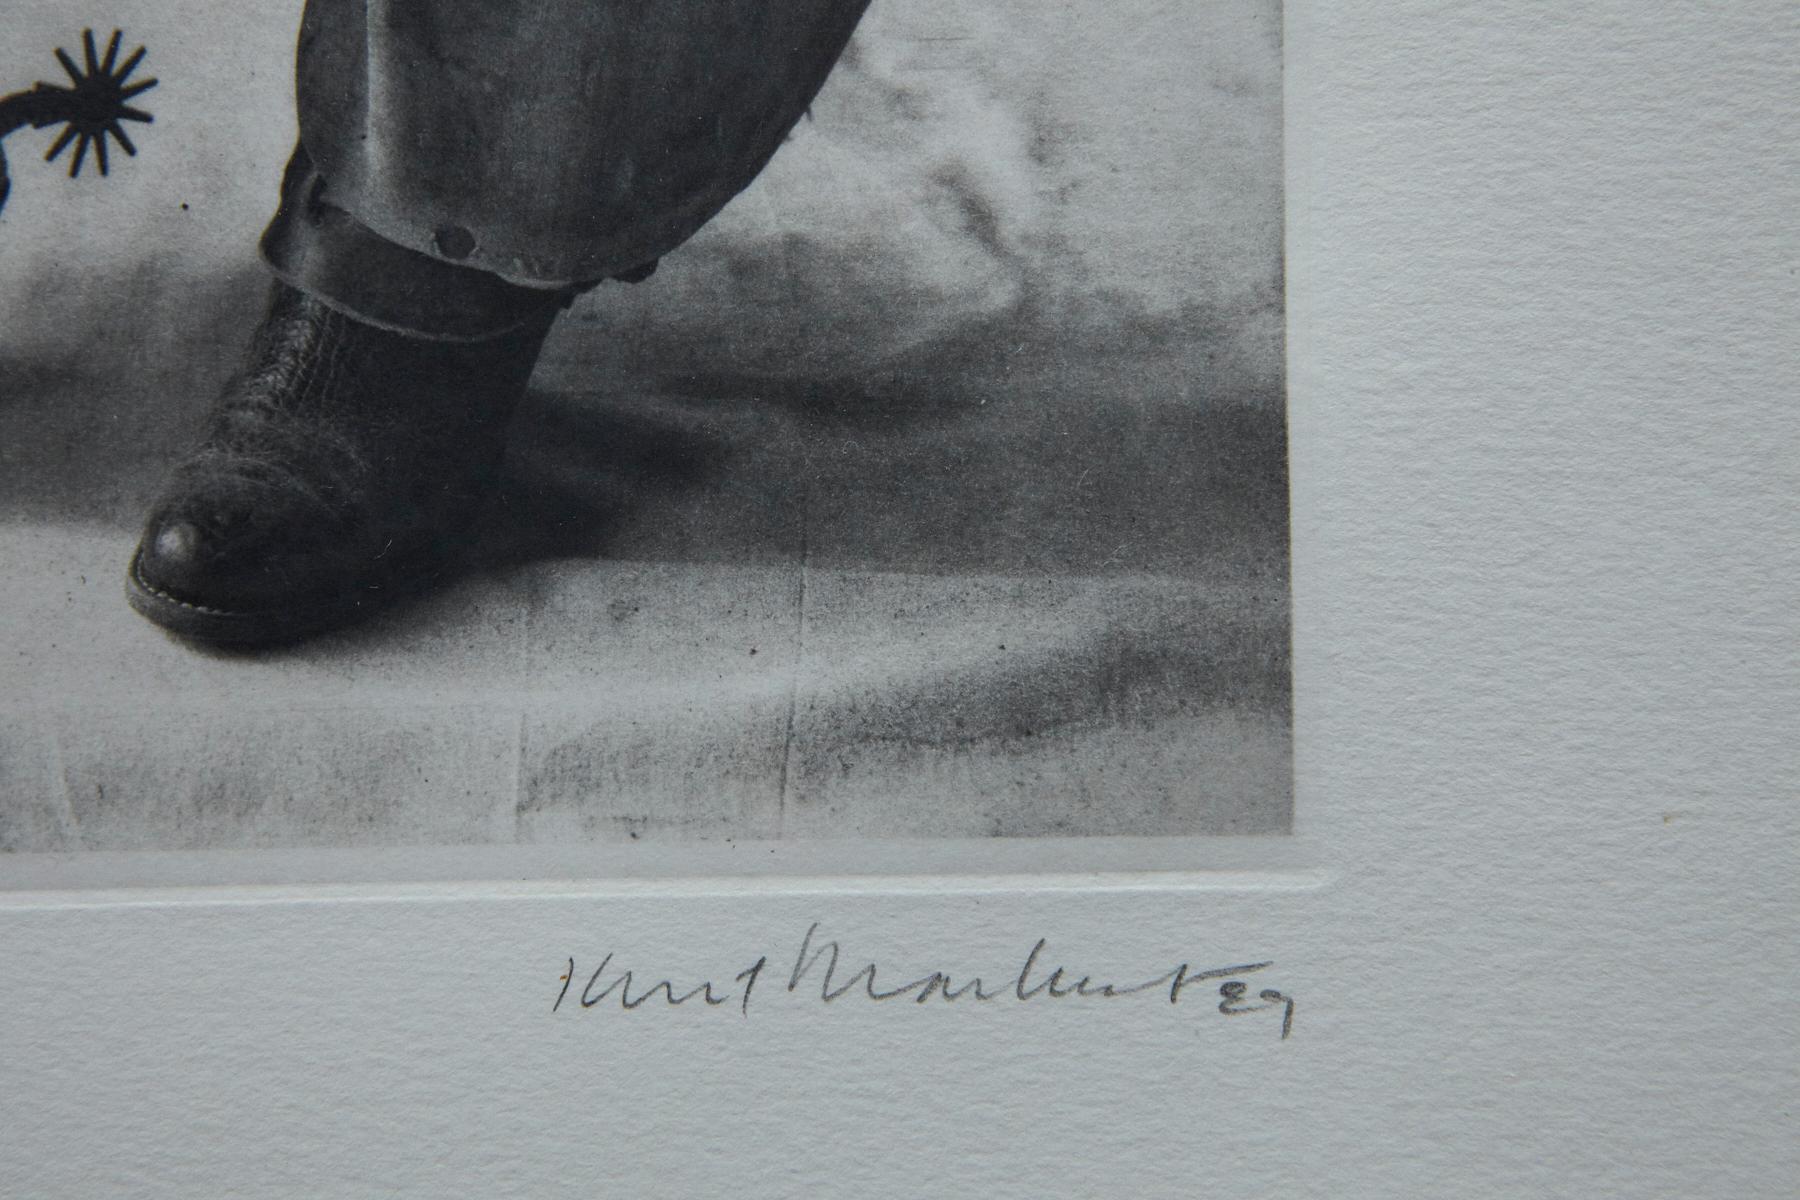 Kurt Markus, Amerikaner (1947) 
Fledermausflügel, Oro Ranch, Prescott, Arizona 
Archival Pigment Print, Auflage 300, Nr. 149, signiert und nummeriert. Gerahmt. 
Abmessungen: Rahmen: H 57,15 cm/22,5 in x B 45,72 cm/18,5 in - Sicht H 33,02 cm/13,5 in